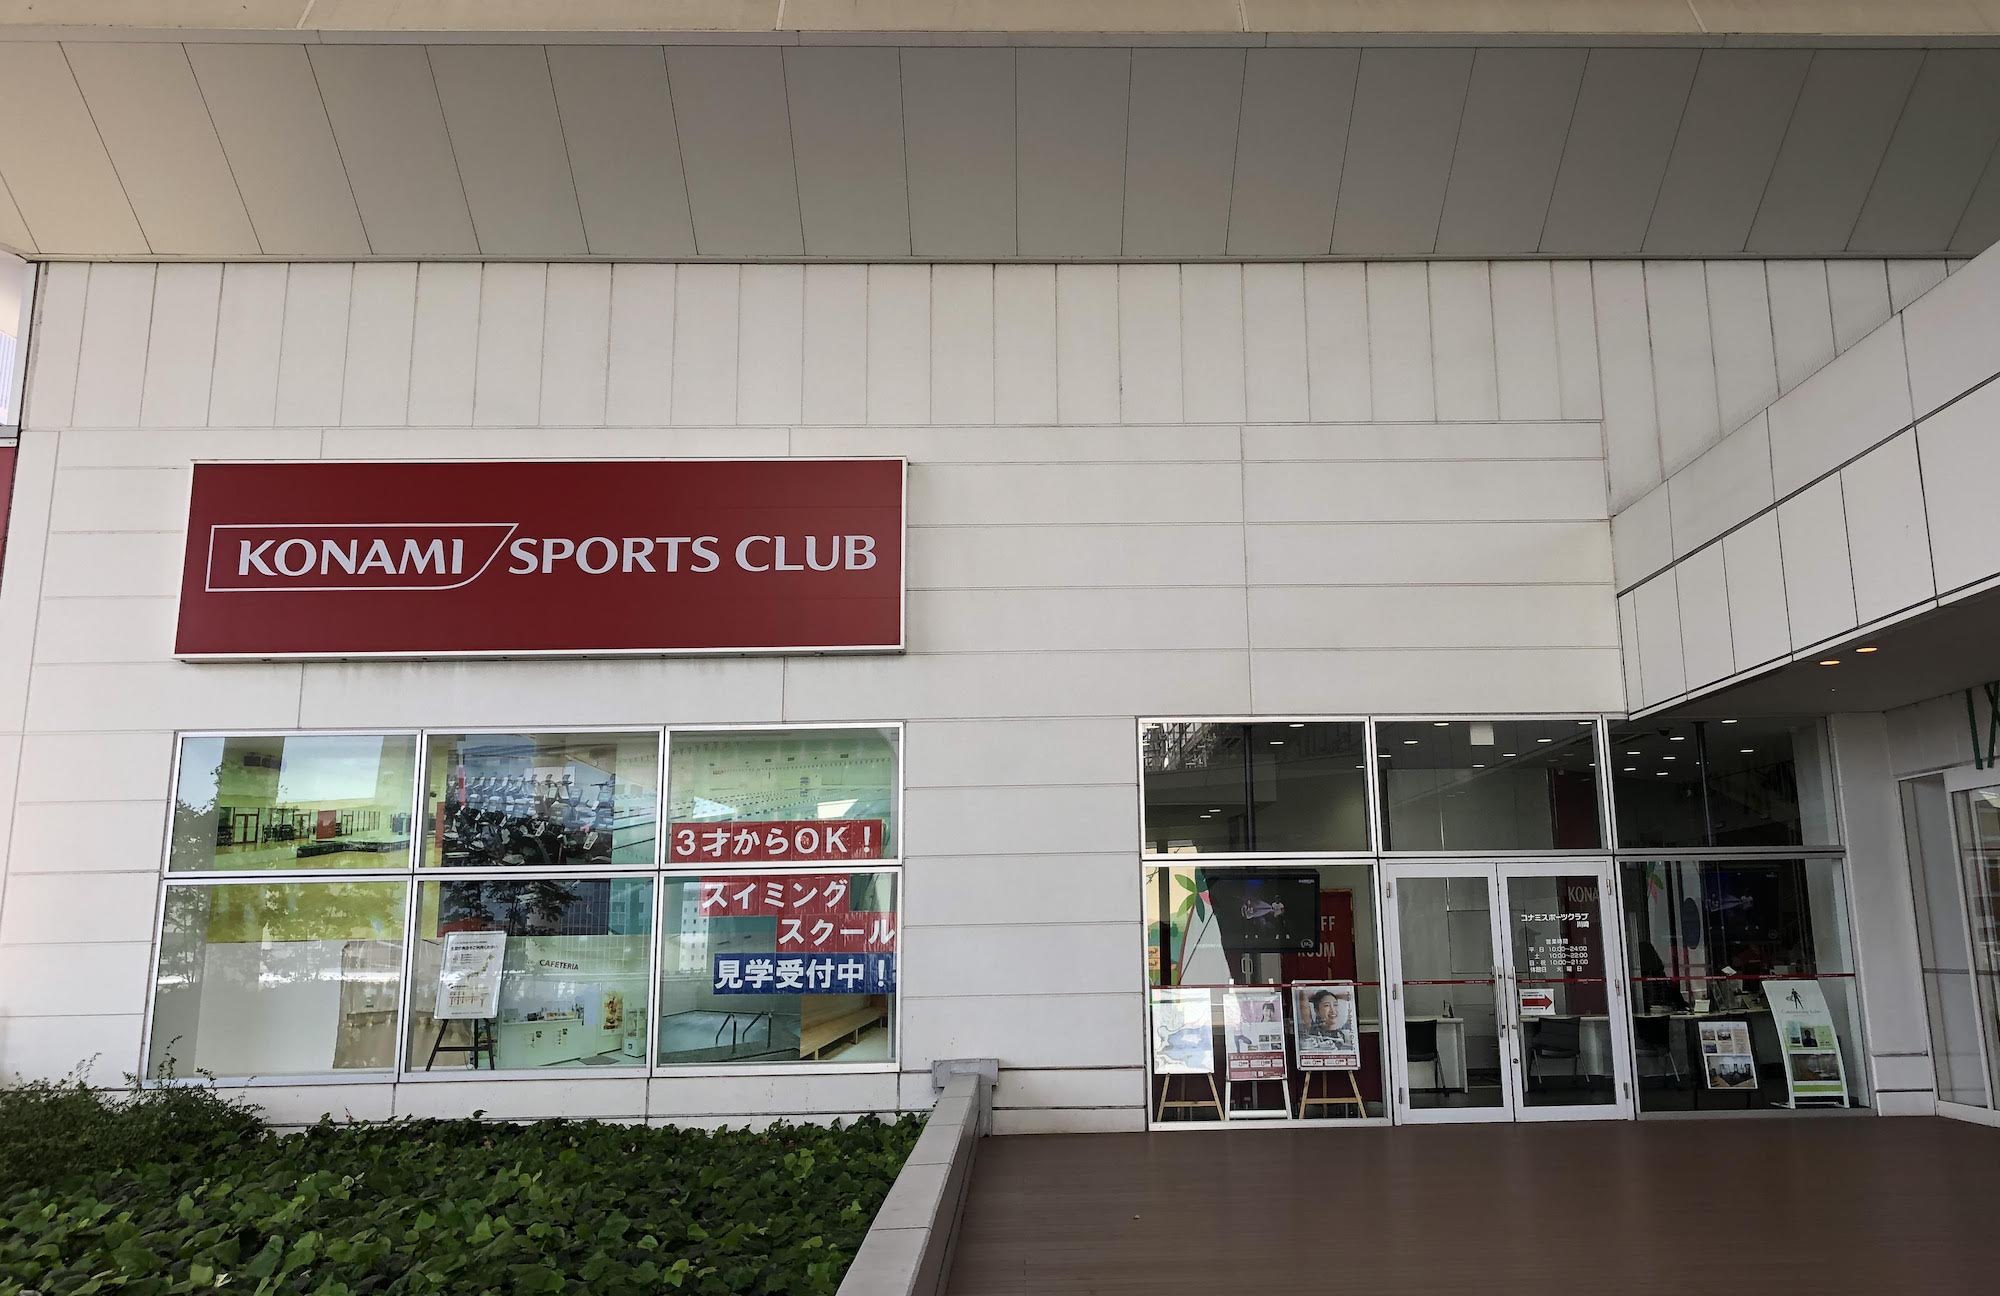 川崎市内のコナミスポーツクラブ 川崎 武蔵小杉 かわさき新聞